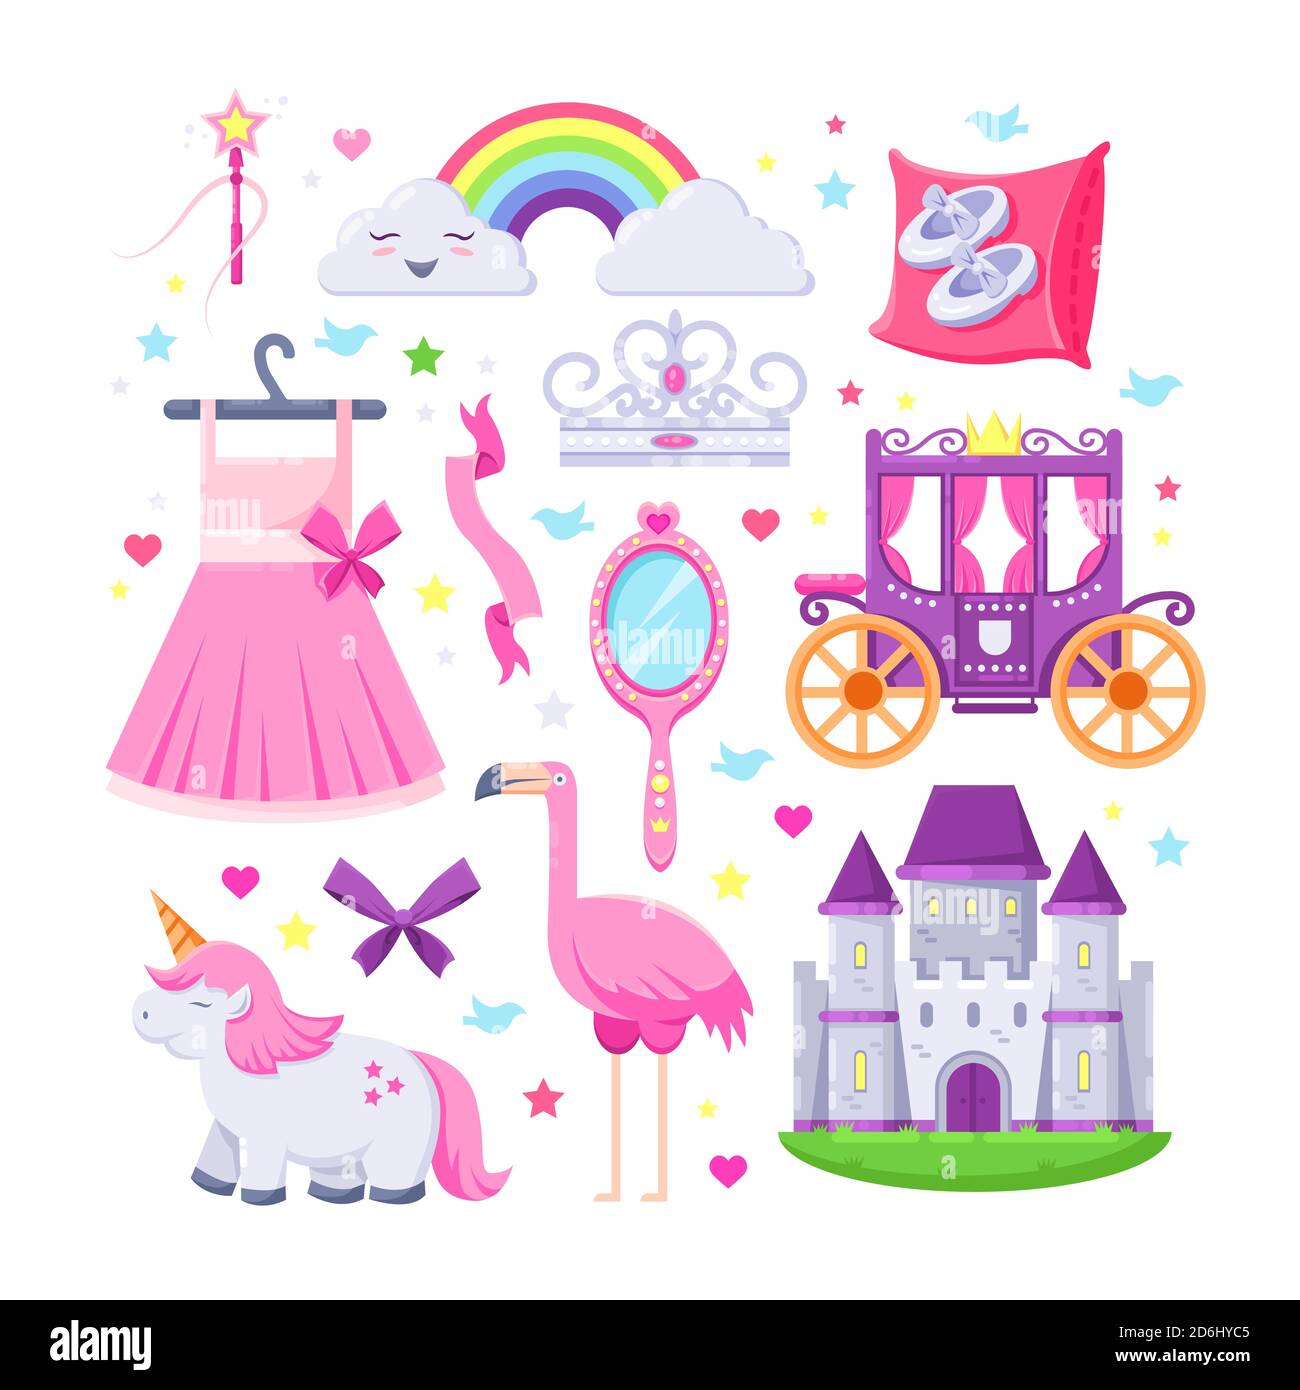 Kleine Prinzessin rosa Ikonen gesetzt. Vektor-Illustration von Einhorn, Burg, Krone, Flamingo, Mädchen Kleid, Regenbogen und Kutsche. Stock Vektor